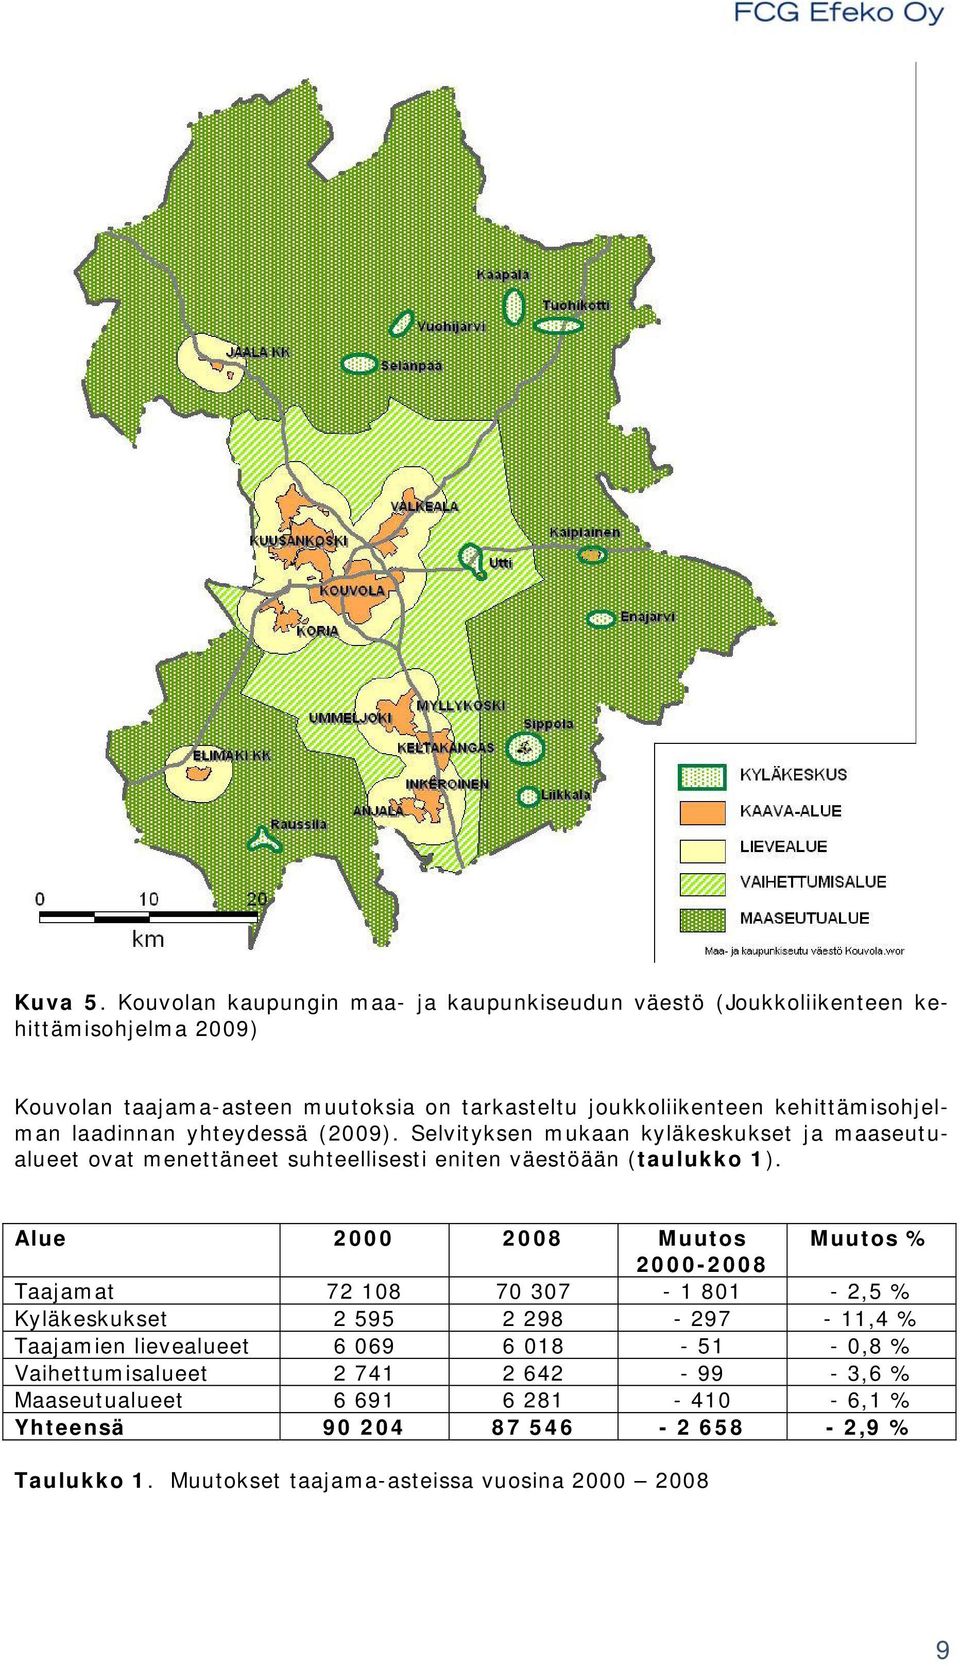 kehittämisohjelman laadinnan yhteydessä (2009). Selvityksen mukaan kyläkeskukset ja maaseutualueet ovat menettäneet suhteellisesti eniten väestöään (taulukko 1).